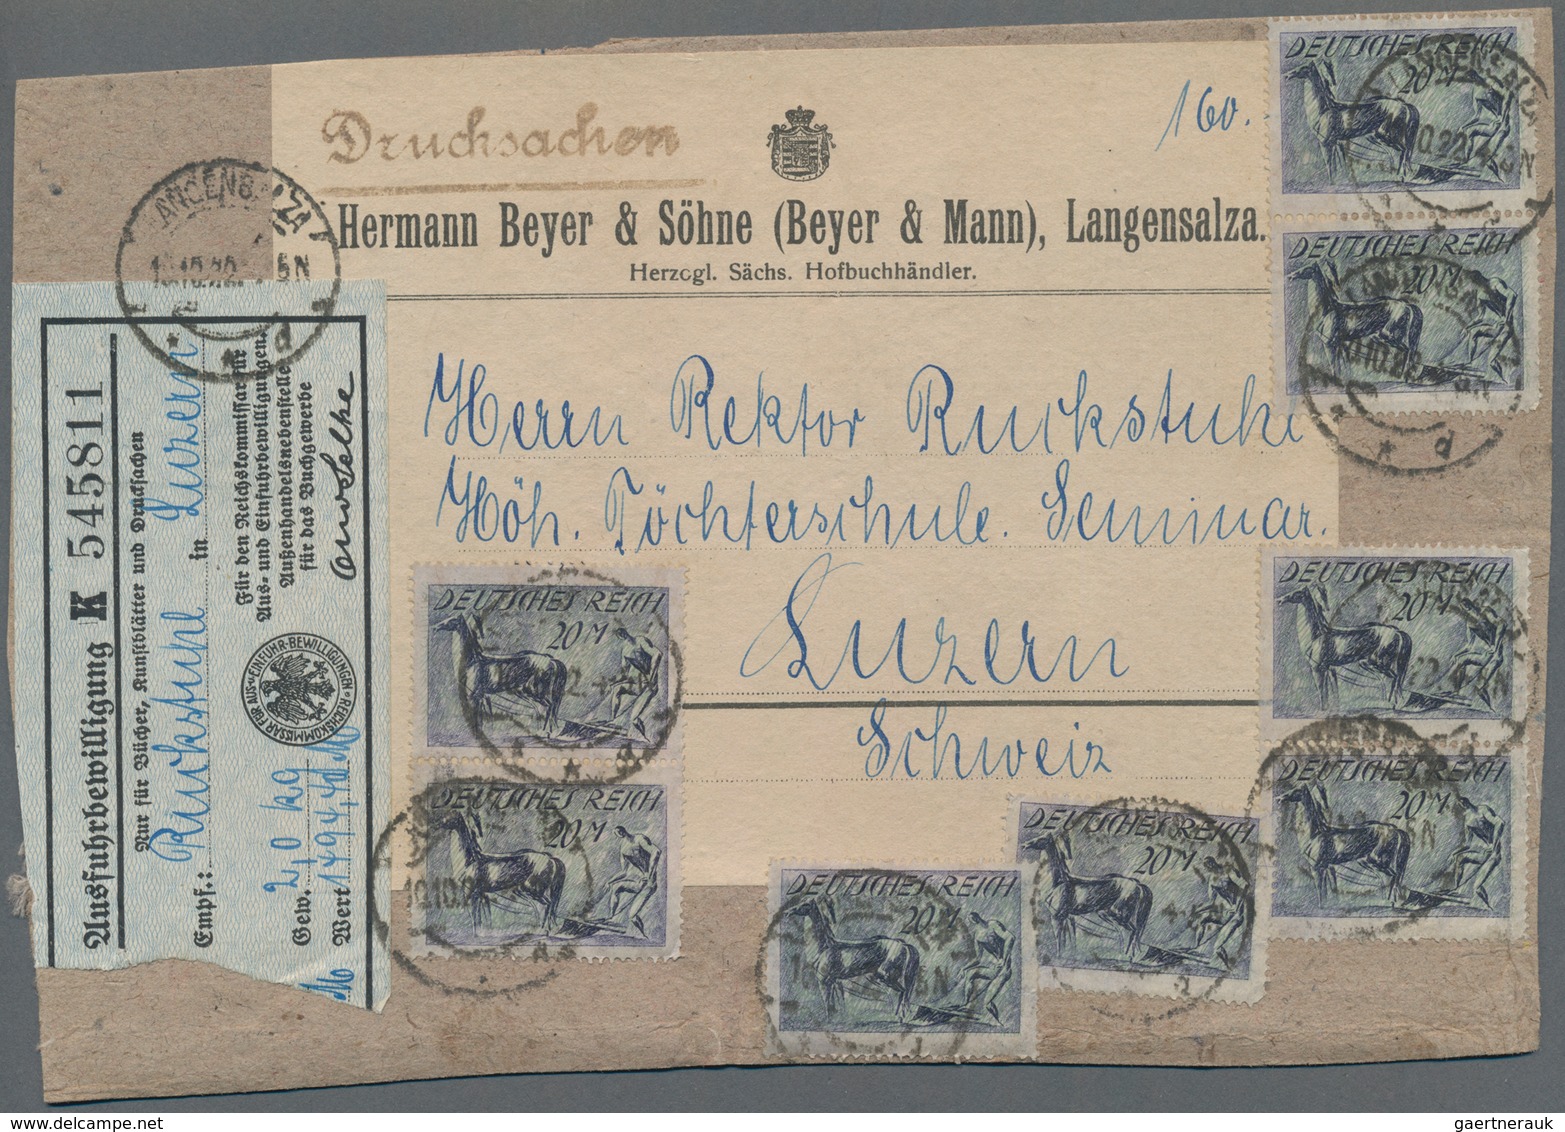 Deutsches Reich - Inflation: 1919/1923, hochwertiger Sammlungsbestand mit ca.80 zumeist besseren Bel